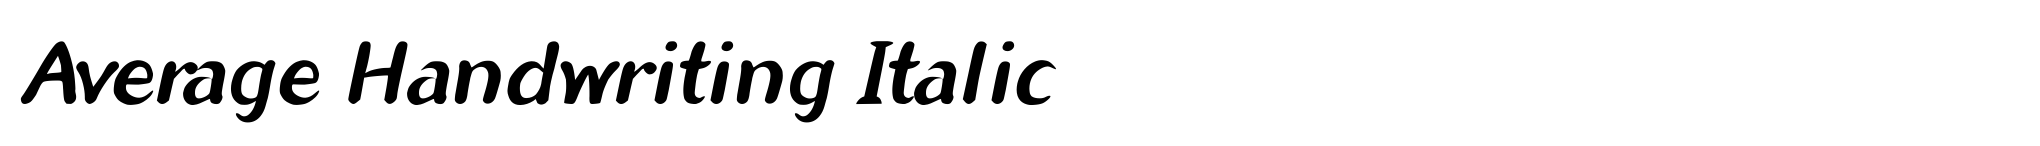 Average Handwriting Italic image